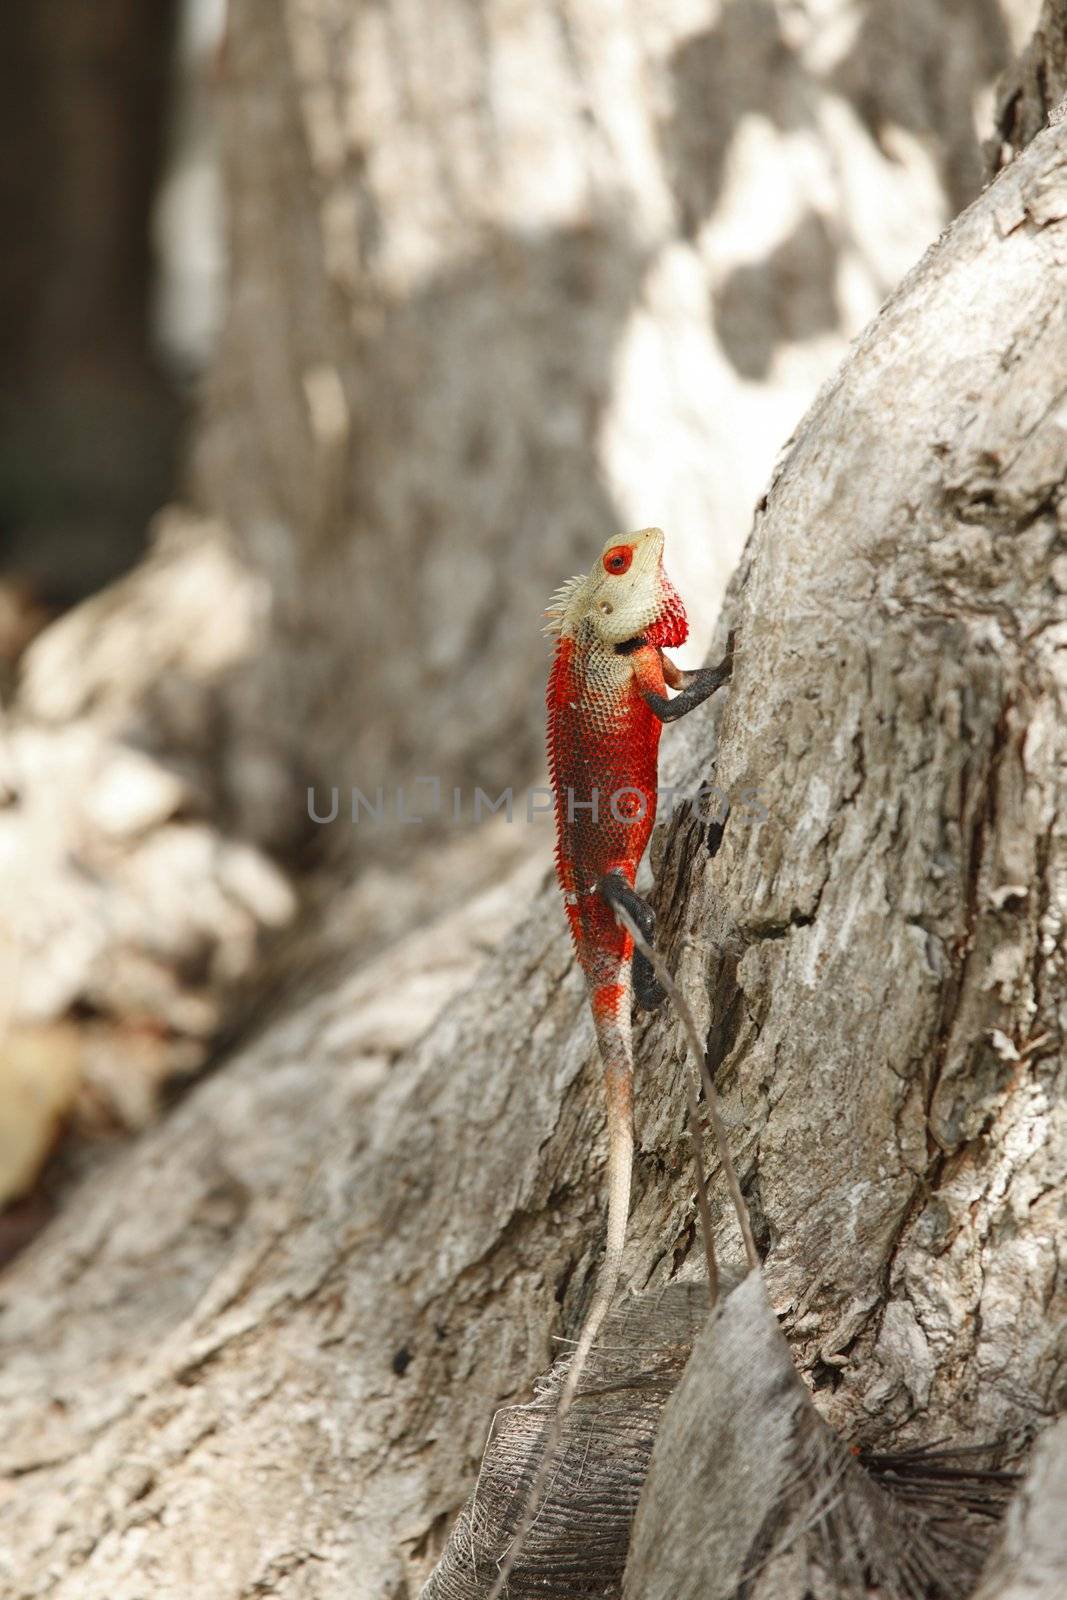 Chameleon on bark by Yellowj